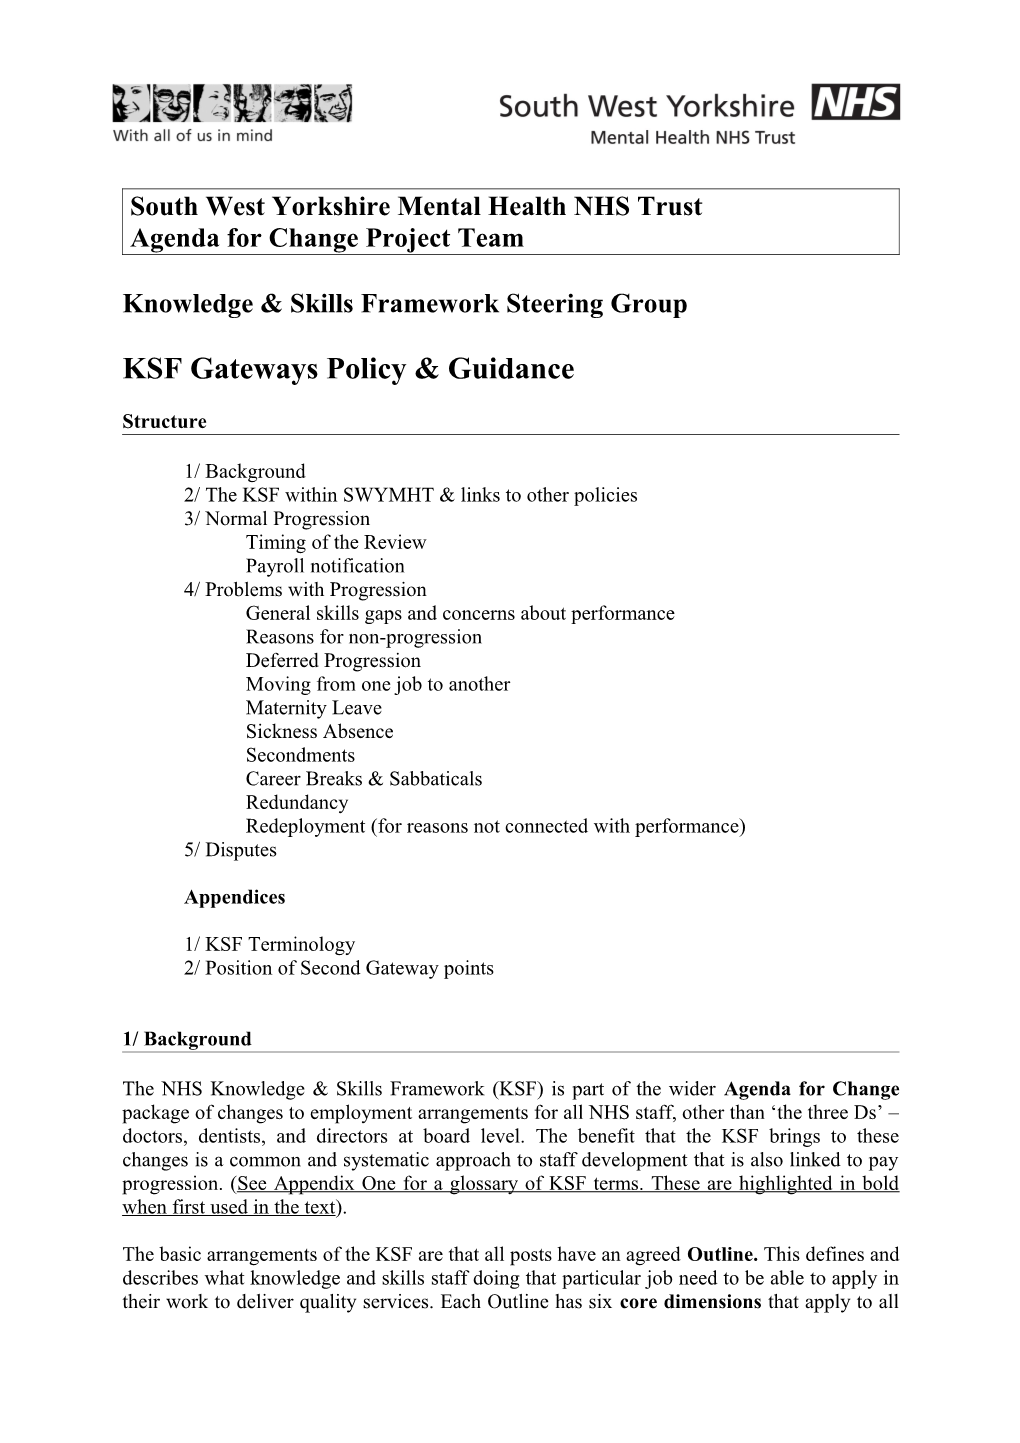 KSF Gateways Policy & Guidance